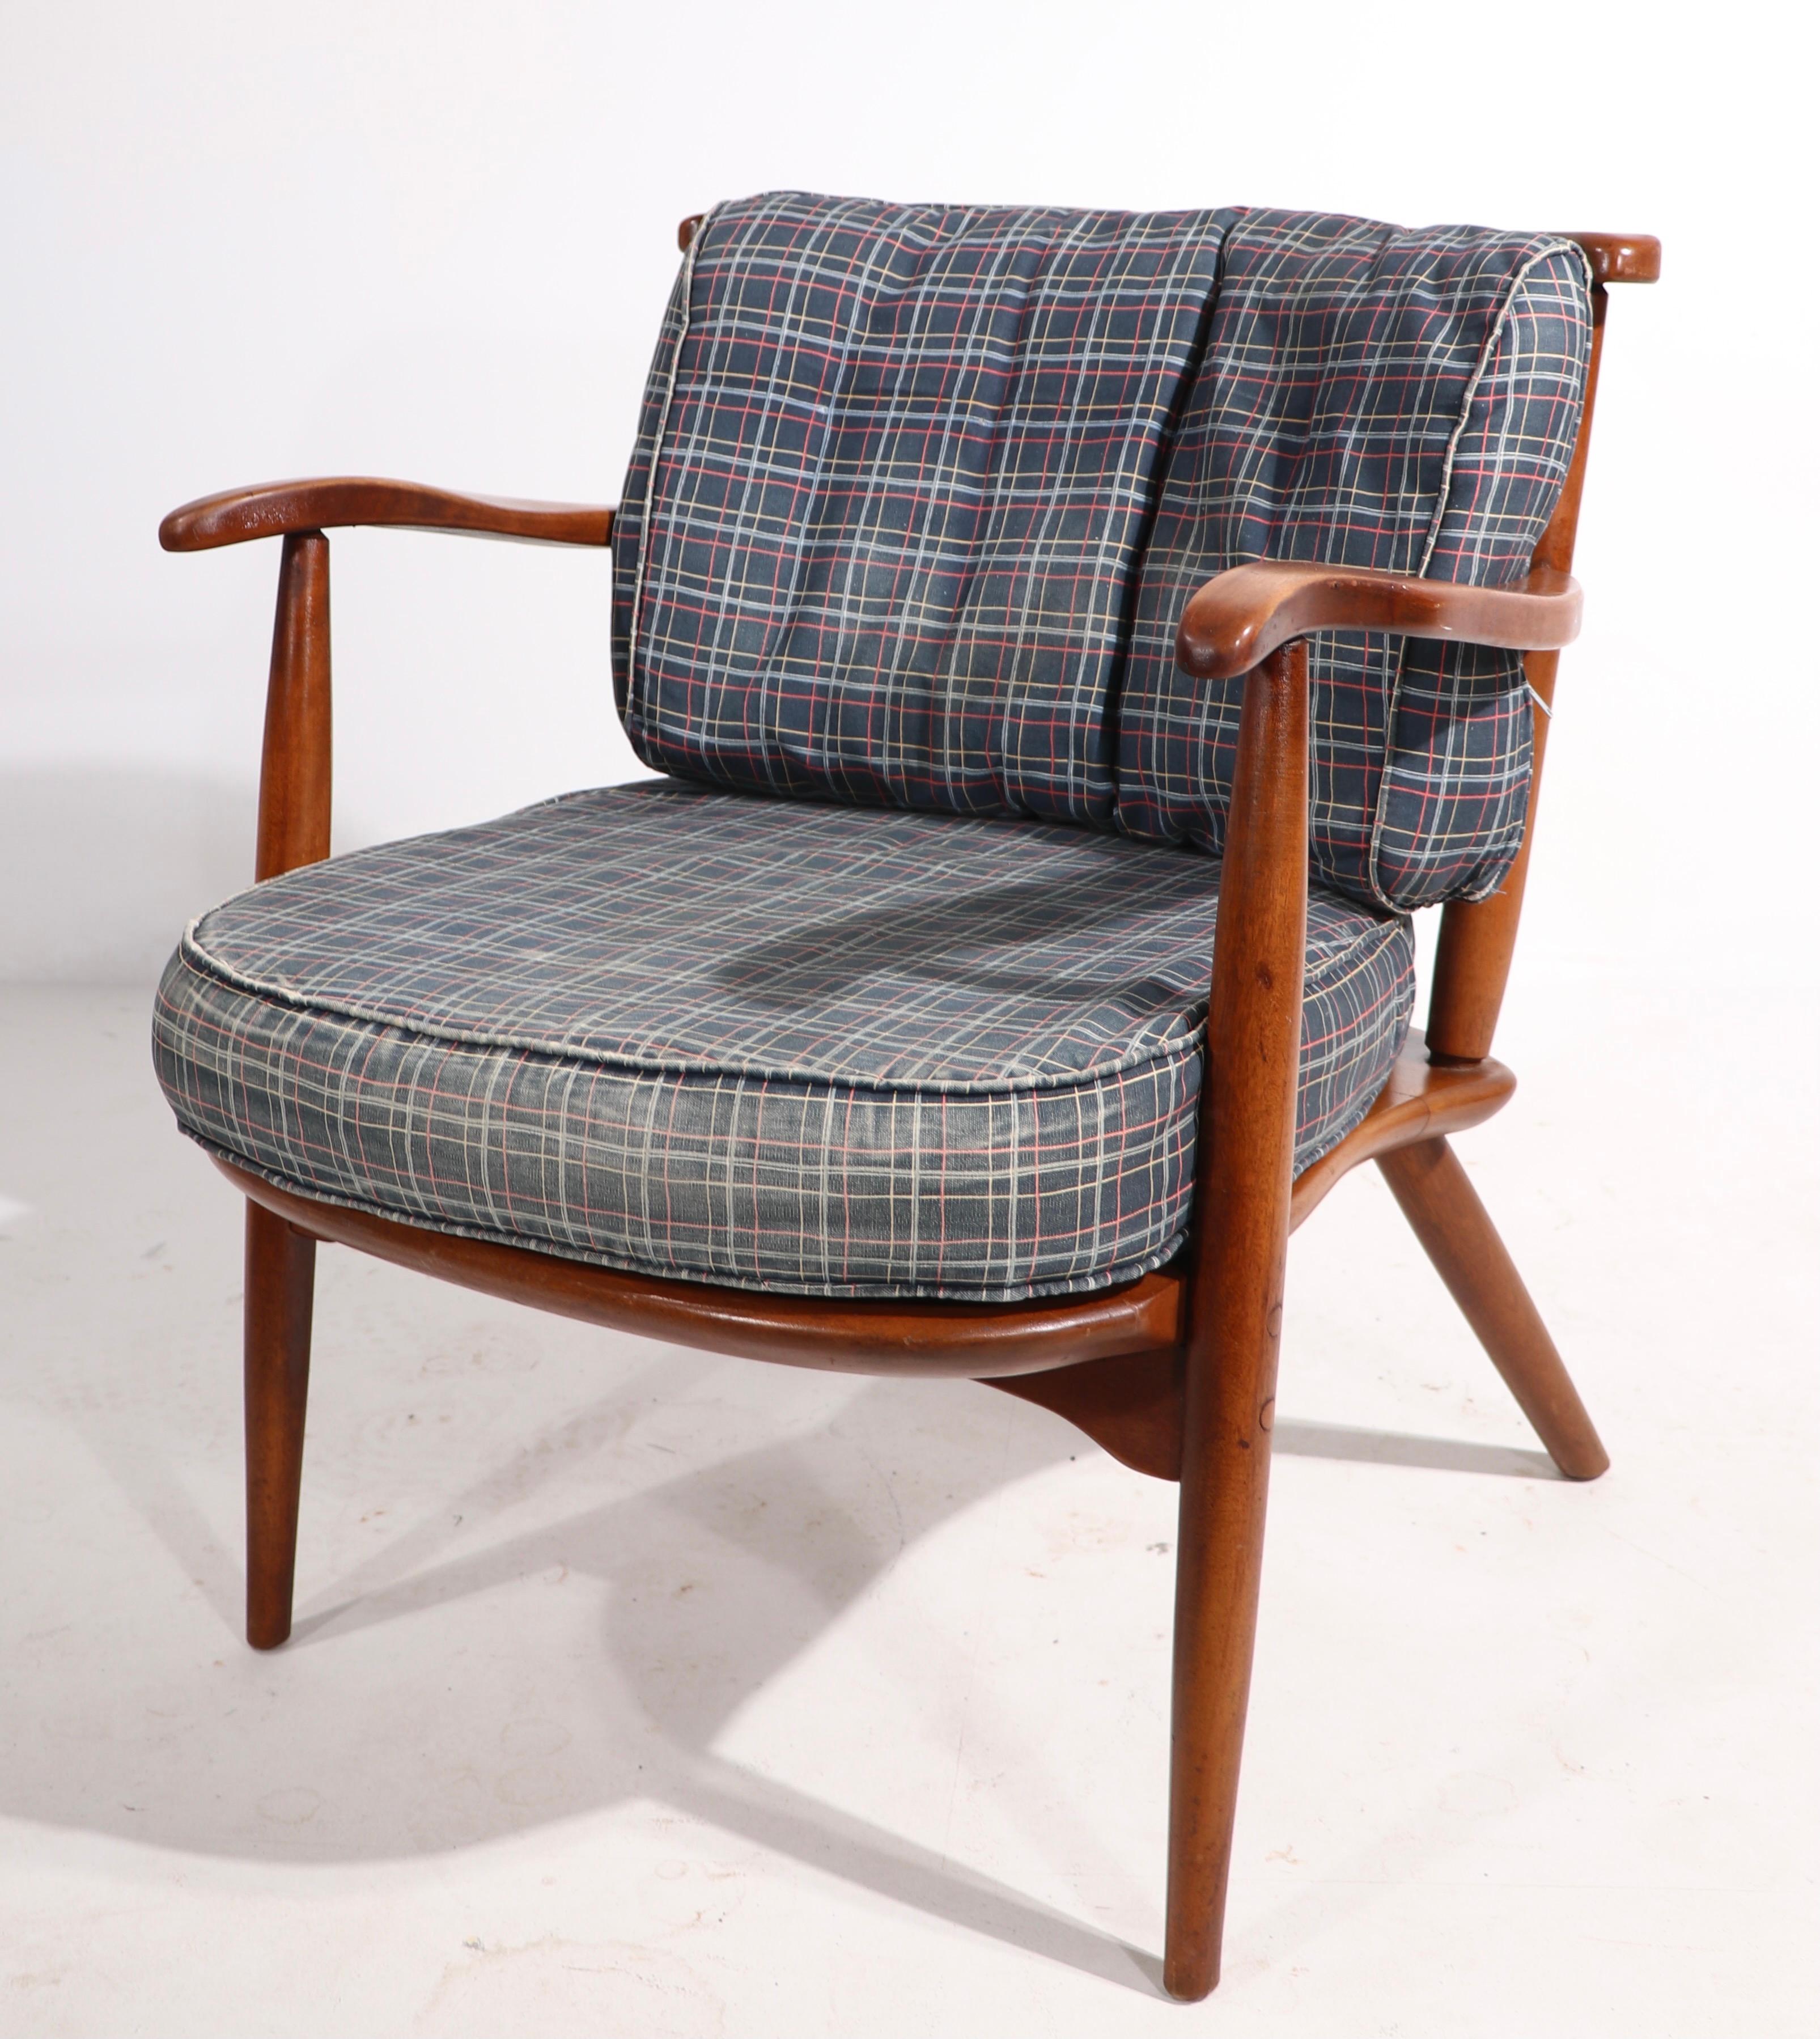 Klassischer Cushman-Sessel mit Ahorngestell im Kolonialstil, der Herman de Vries zugeschrieben wird. Dieses Exemplar ist in sehr gutem, originalem Zustand und zeigt nur leichte kosmetische Abnutzungserscheinungen, die normal und altersgemäß sind,